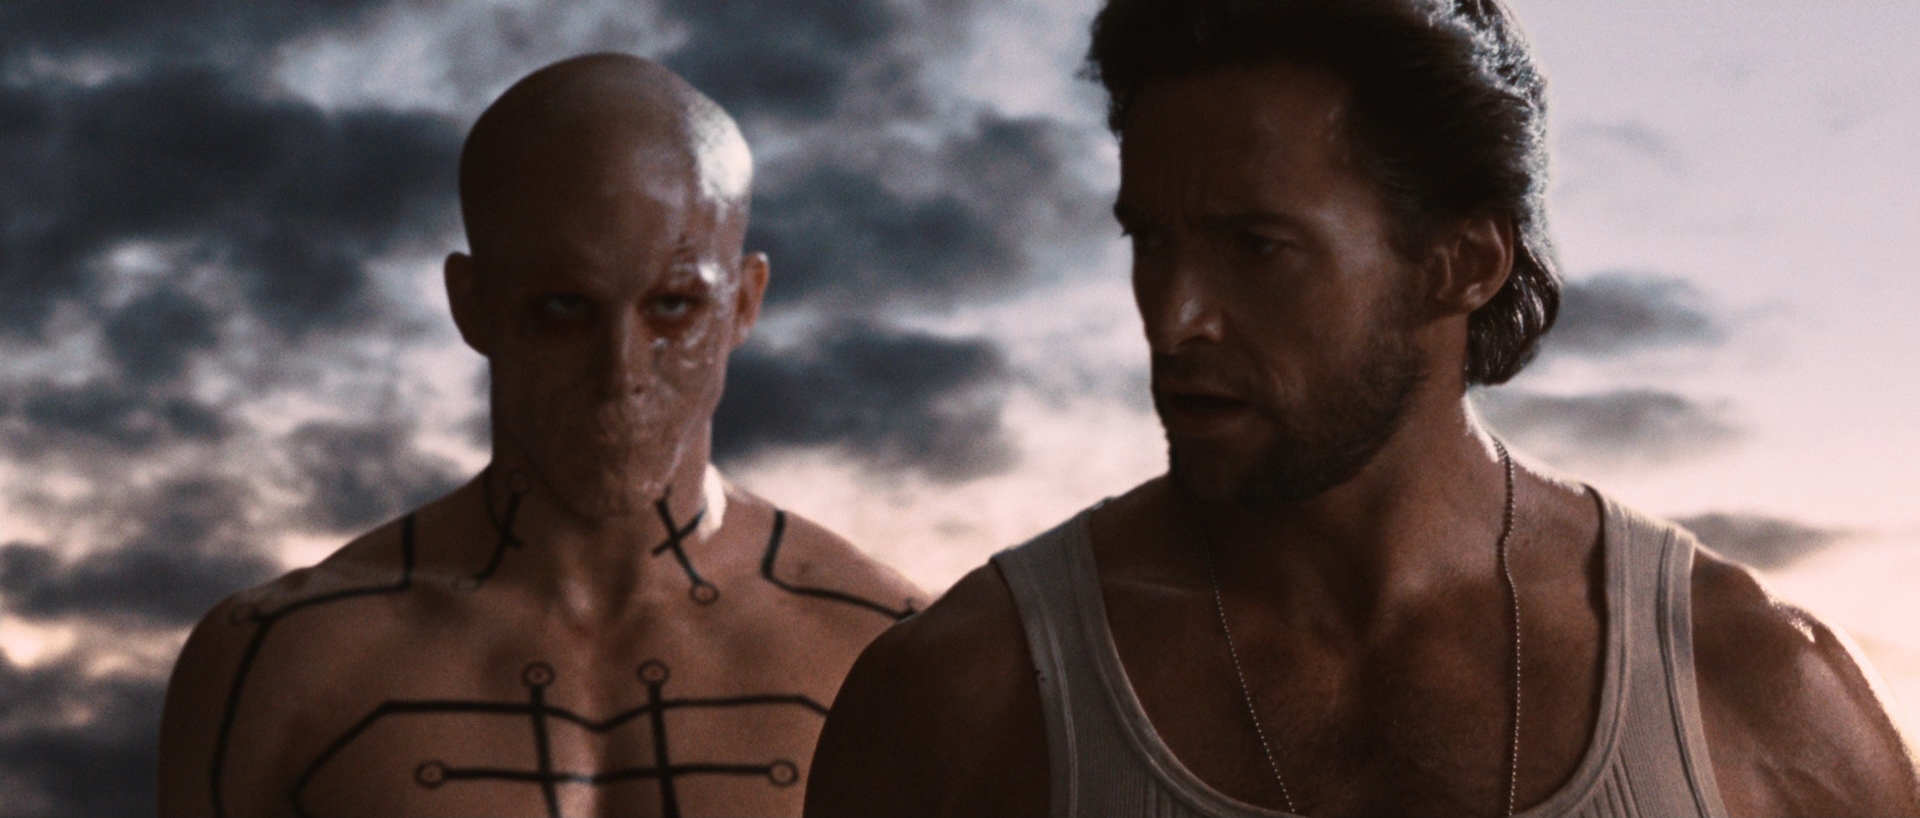 Film de 2009 que muestra el orígen de Wolverine y donde ambos actores aparecieron por primera vez juntos con sus populares personajes. (20th Century Studios)